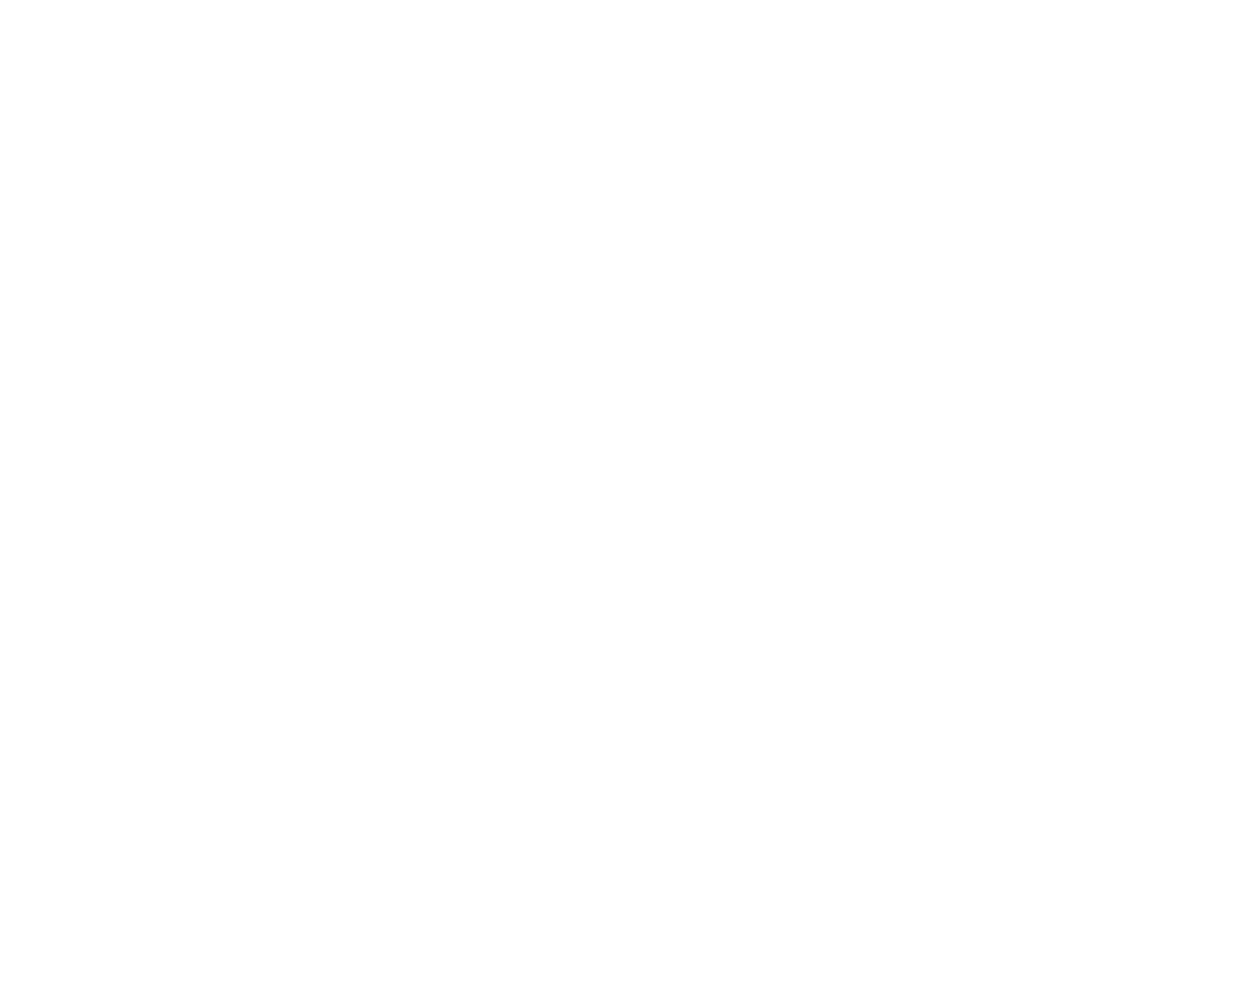 logo-white-bruel-kjaer.png